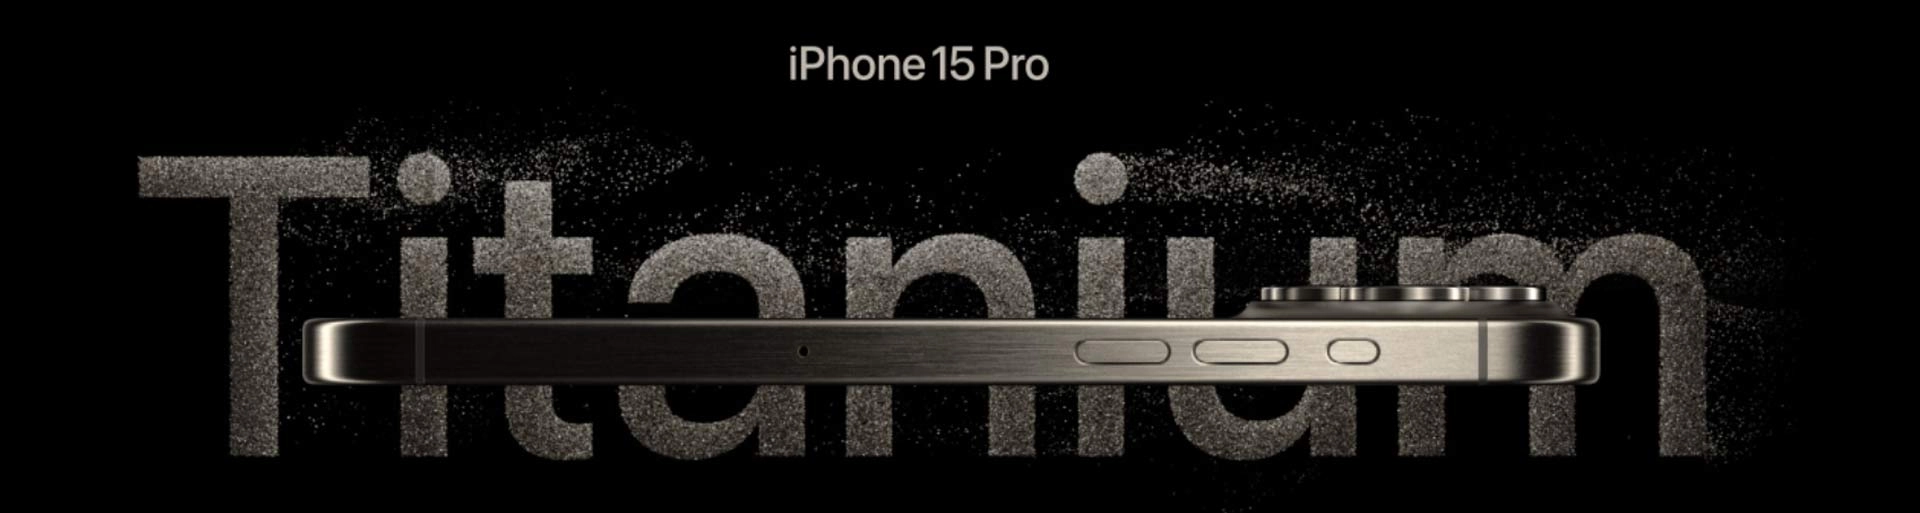 iPhone 15 Pro Features in Dubai, iPhone 15 Pro Specs in Price in Dubai UAE, iPhone 15 Pro Max 256gb shop price dubai